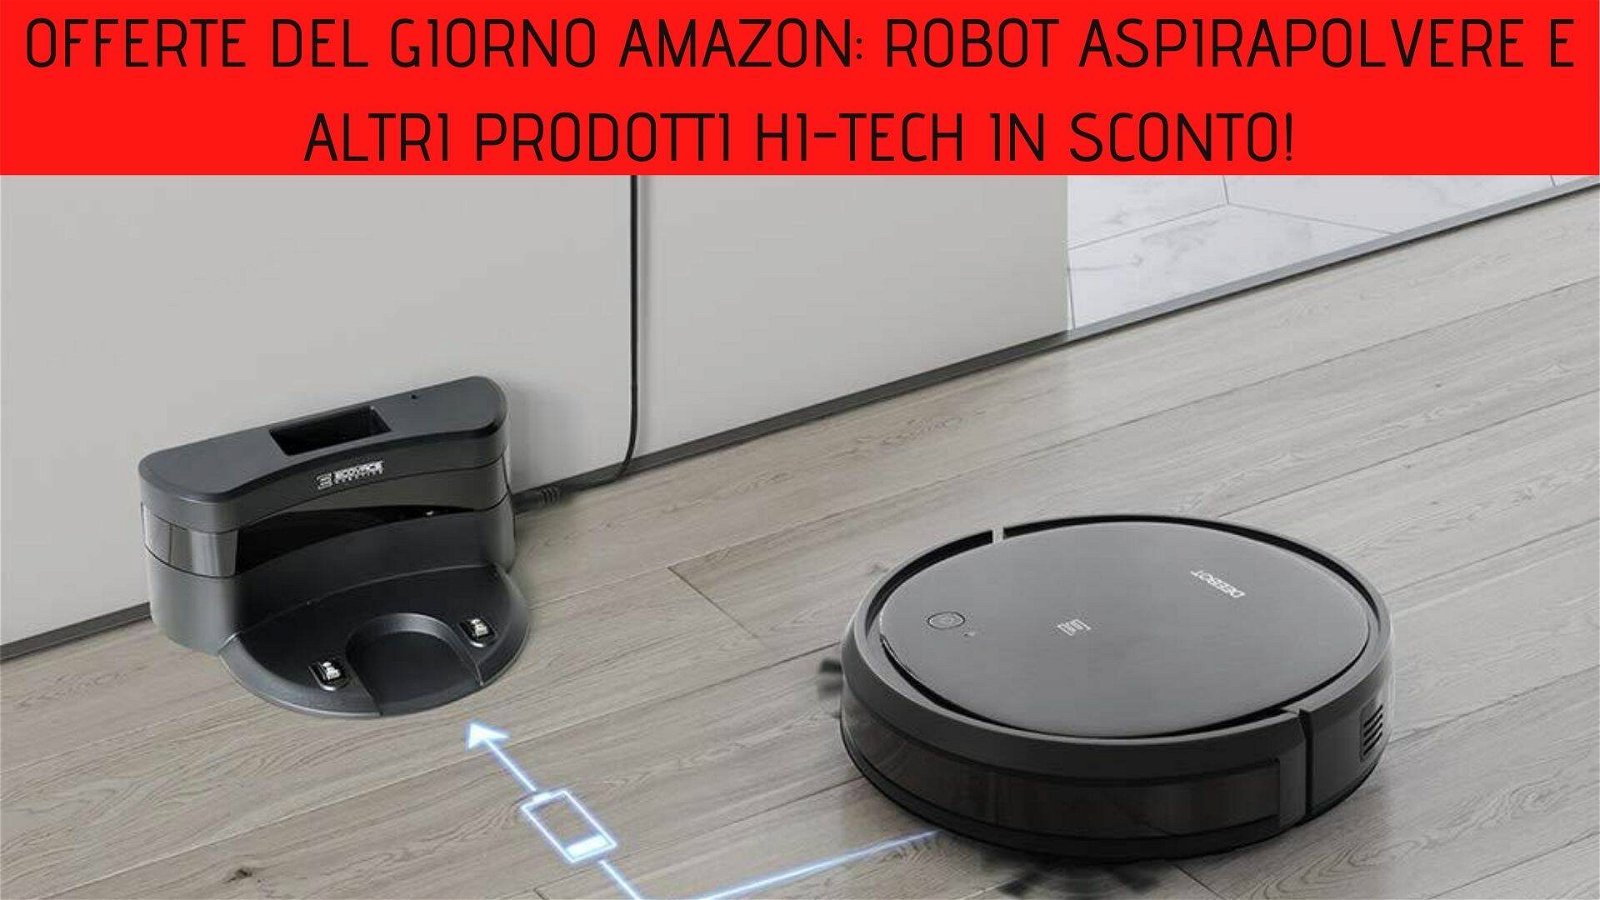 Immagine di Offerte del giorno Amazon: robot aspirapolvere e altri prodotti hi-tech in sconto!